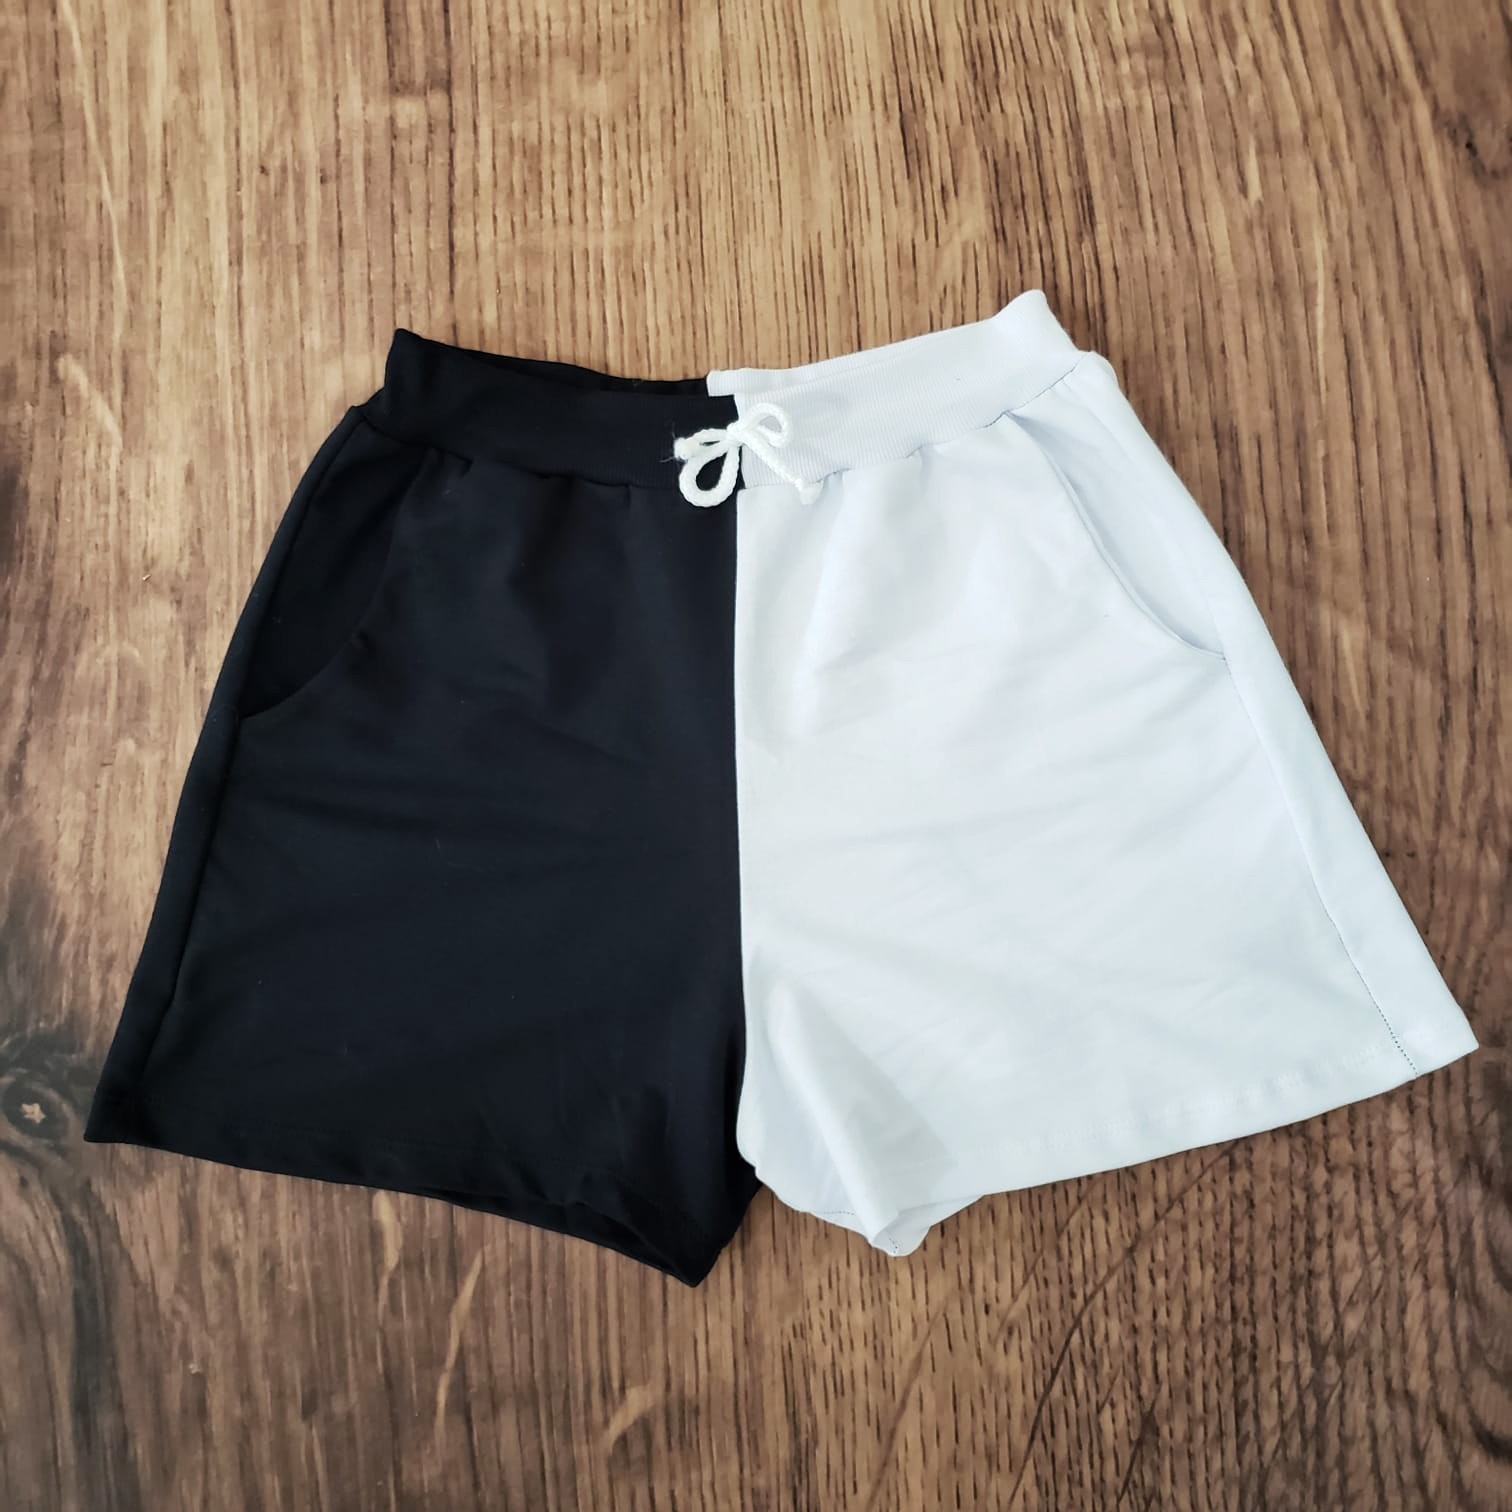 Shorts duo feminino adulto preto e branco